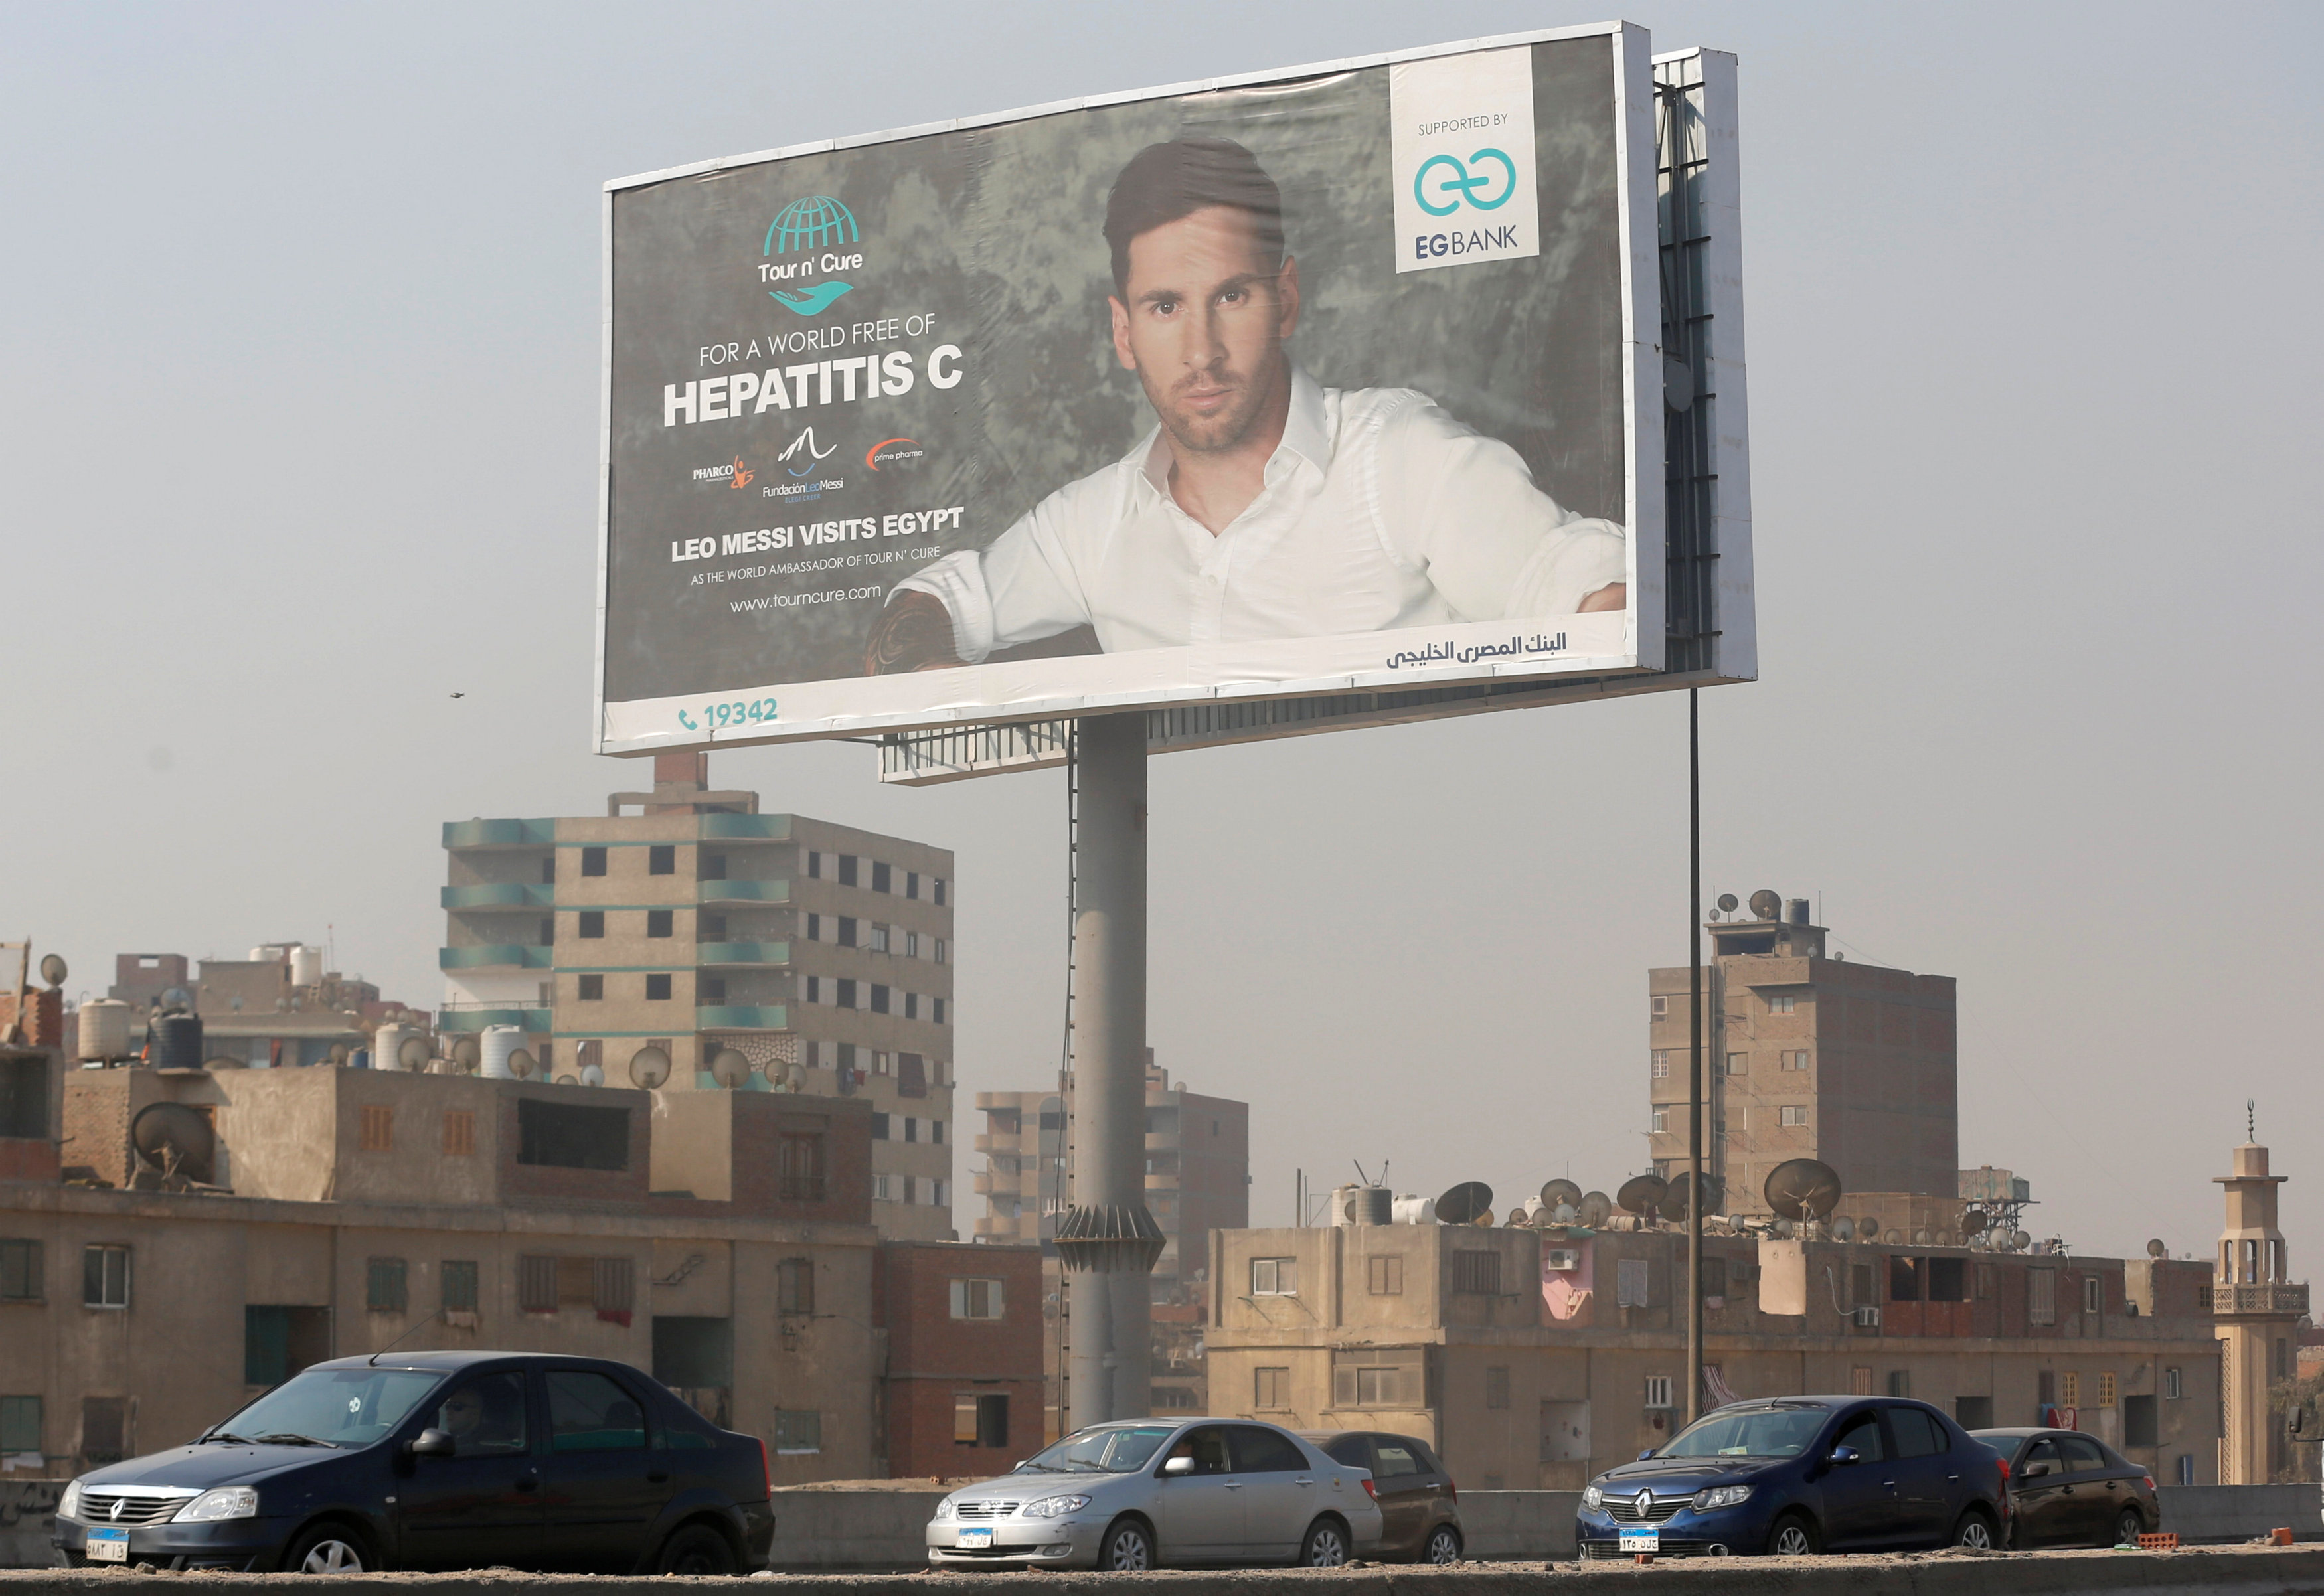 اعلانات تحمل صورة ليونيل ميسى فى محاور الطرق الرئيسية بالقاهرة قبل زيارته لمصر 2